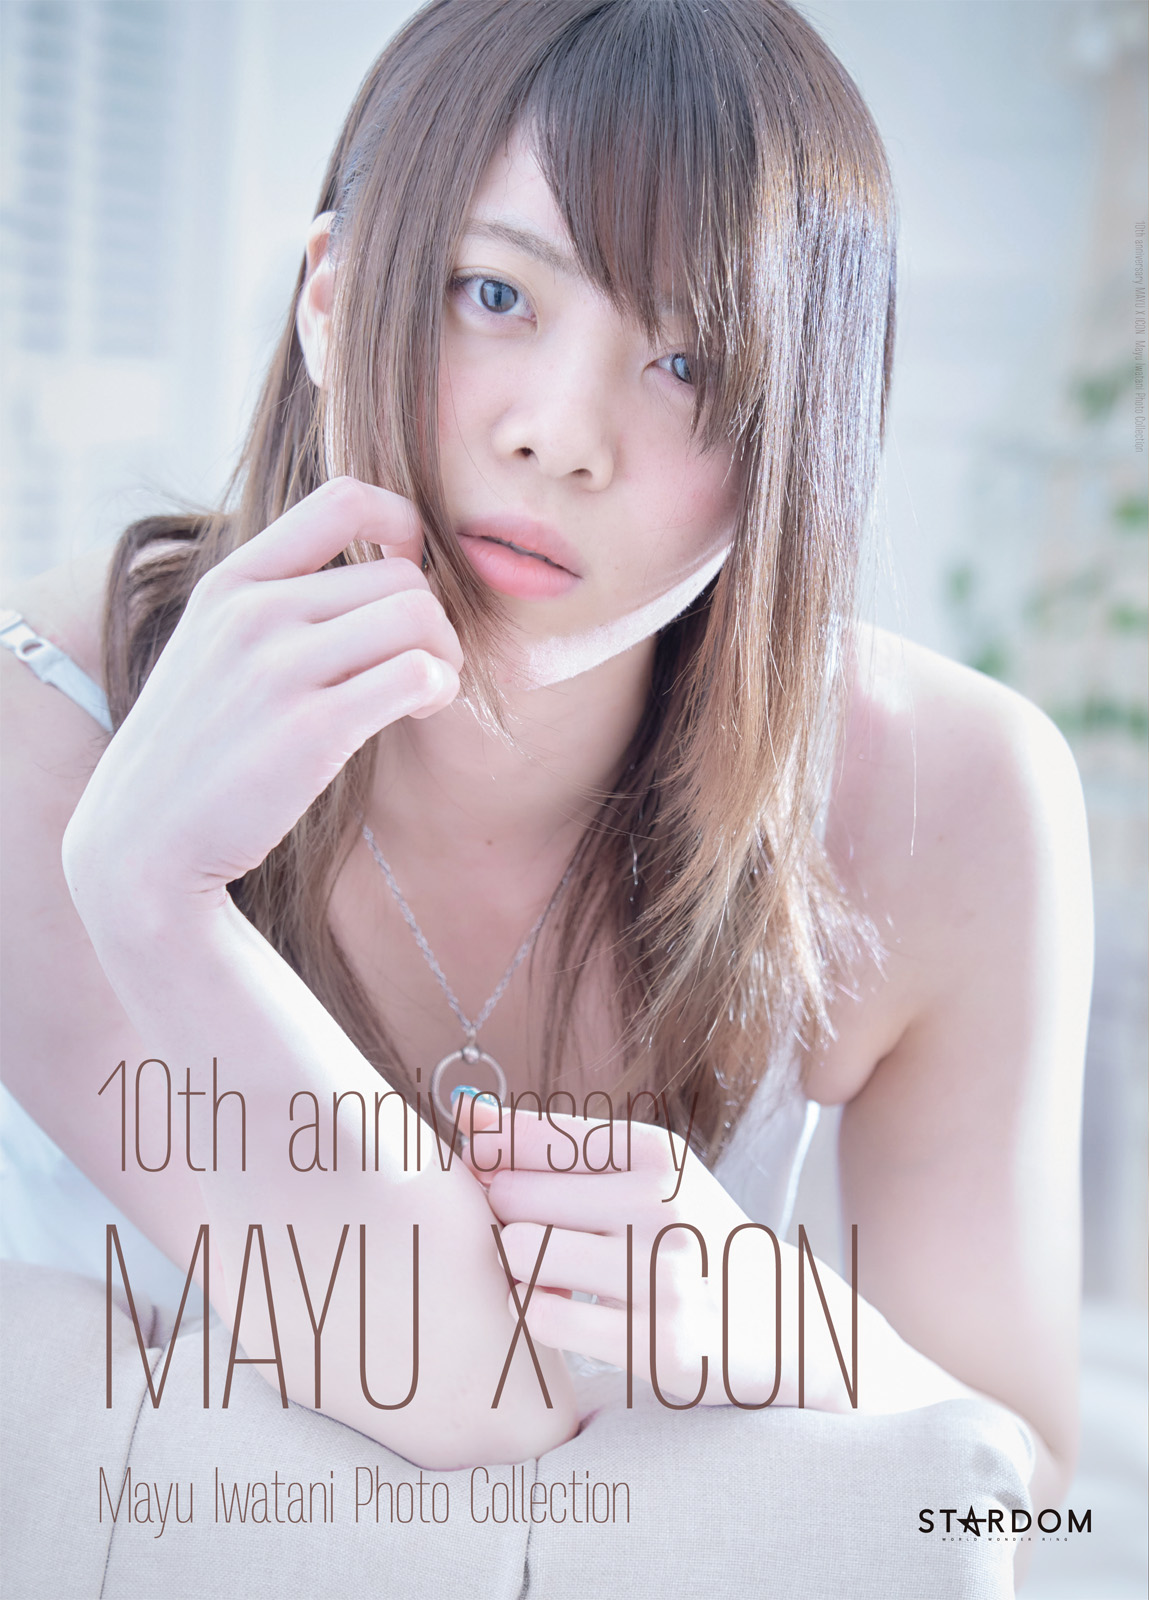 岩谷麻優写真集 10th anniversary MAYU X ICON(写真集) - 電子書籍 | U ...